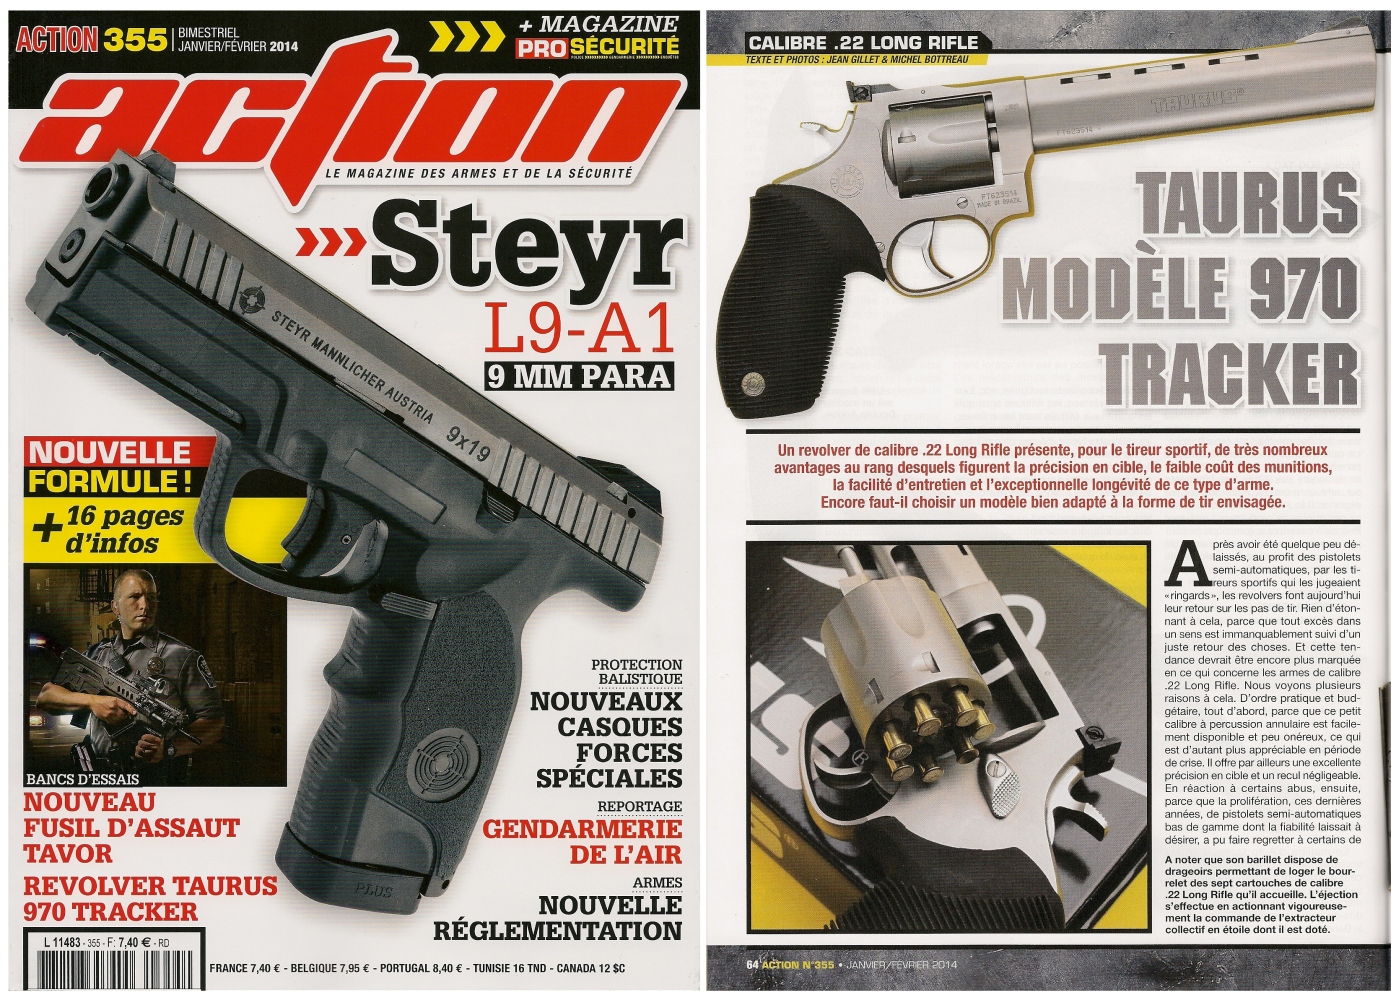 Le banc d’essai du revolver Taurus 970 Tracker a été publié sur 6 pages dans le magazine Action n°355 (janvier-février 2014)